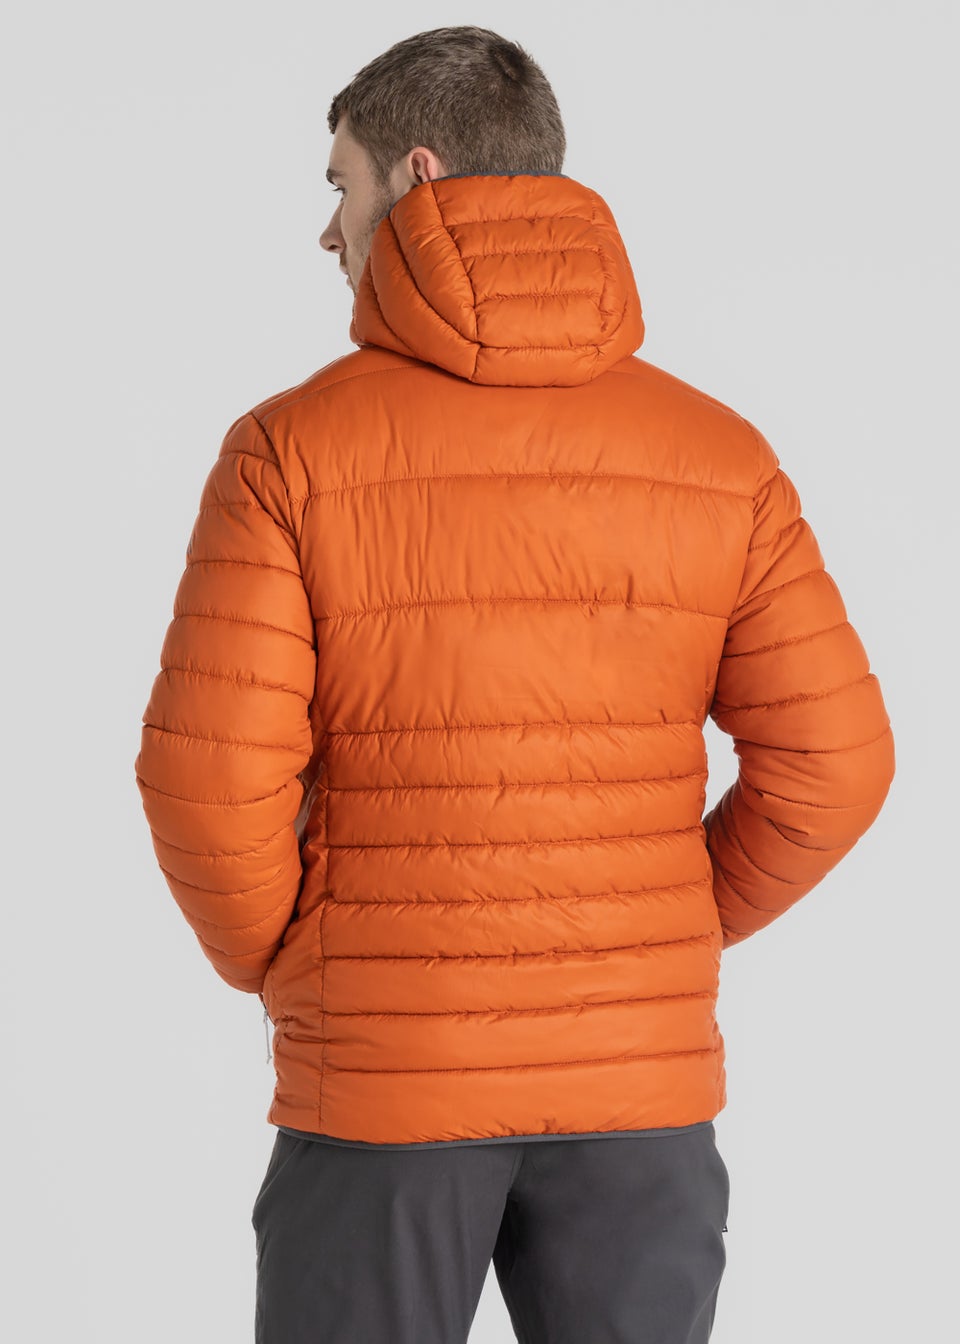 Craghoppers Orange Compresslite Hooded Jacket